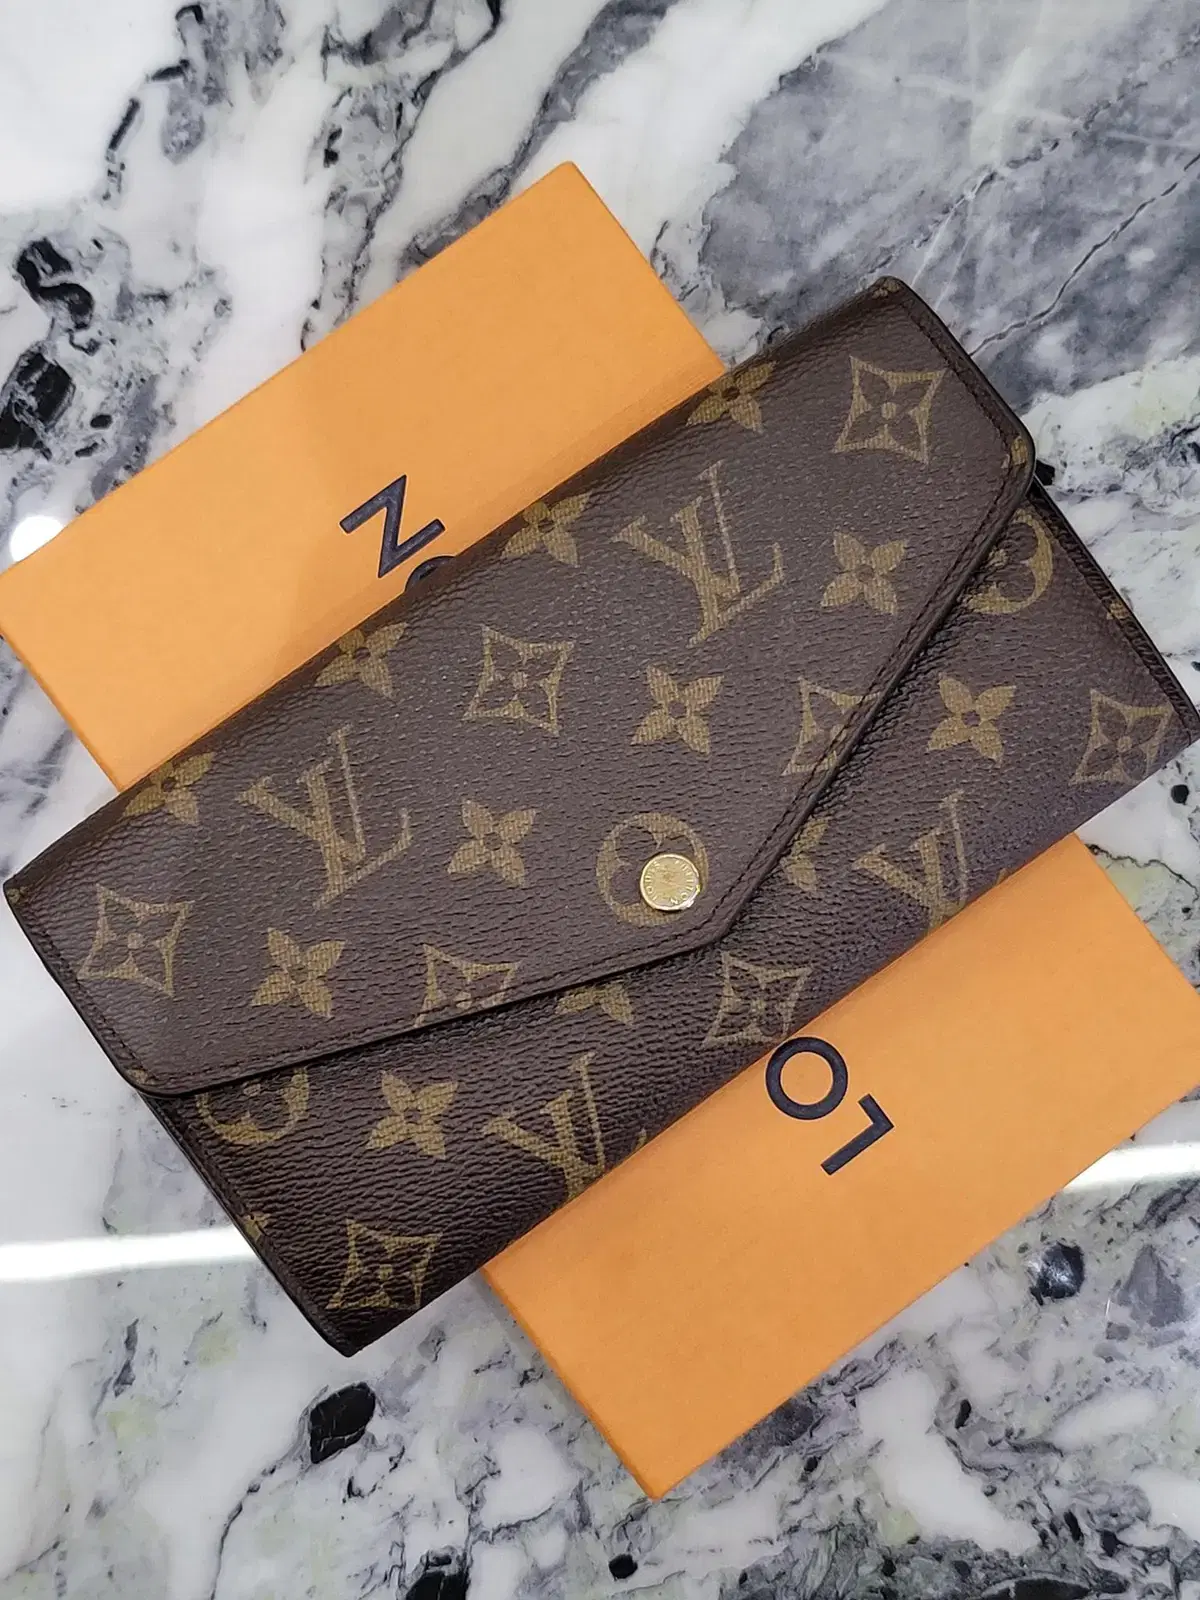 Louis Vuitton PORTEFEUILLE SARAH Sarah wallet (M62236, M62234, M62235,  M60531)